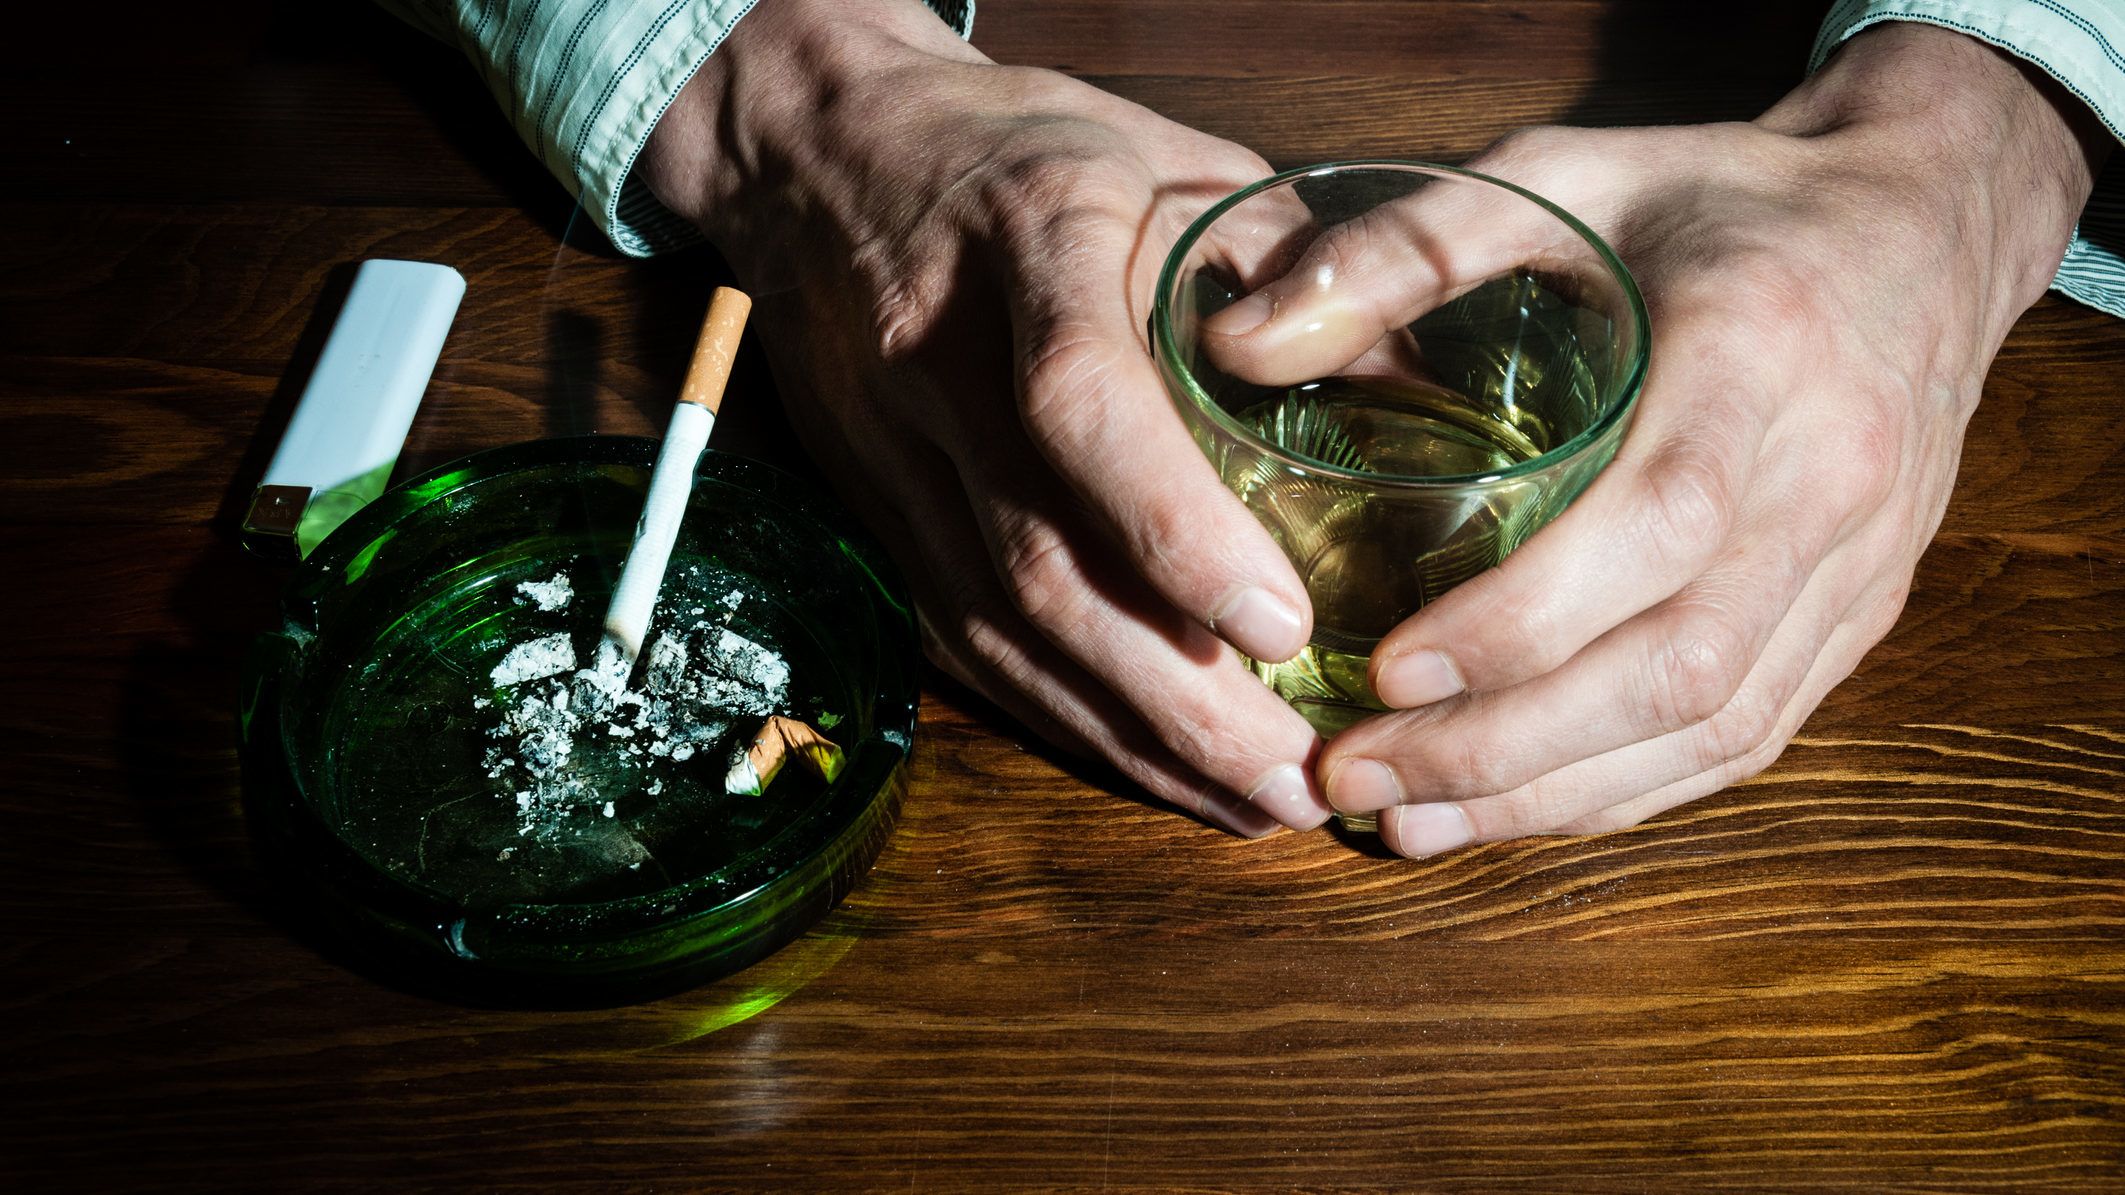 akik azonnal abbahagyták a dohányzást és az ivást dohányzás esetén fáj a lapocka között